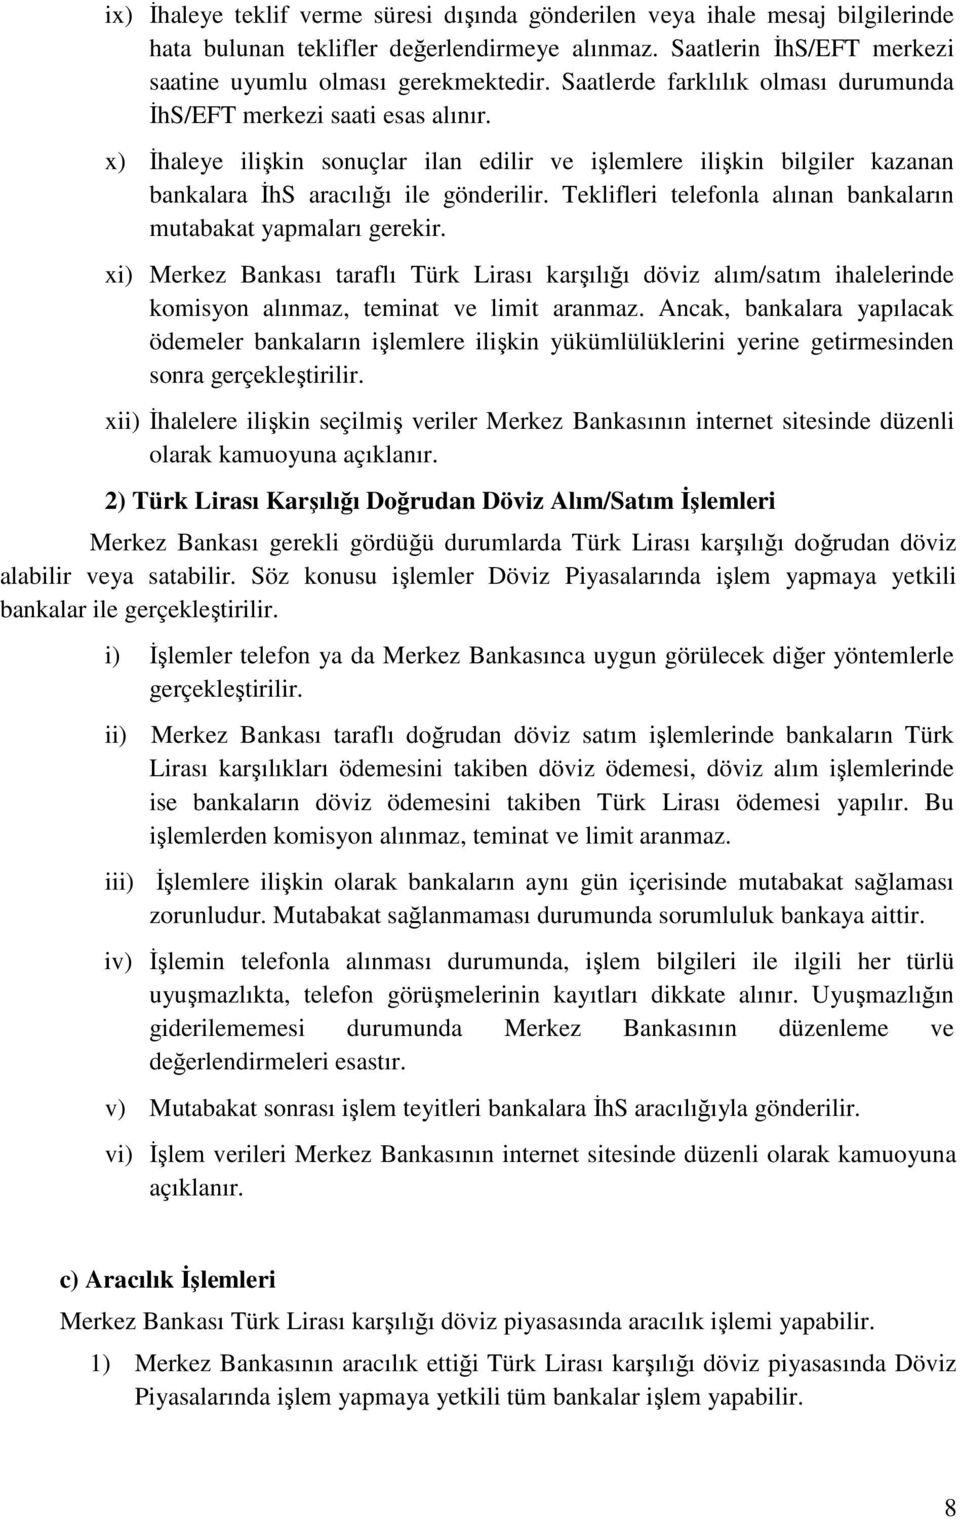 Teklifleri telefonla alınan bankaların mutabakat yapmaları gerekir. xi) Merkez Bankası taraflı Türk Lirası karşılığı döviz alım/satım ihalelerinde komisyon alınmaz, teminat ve limit aranmaz.